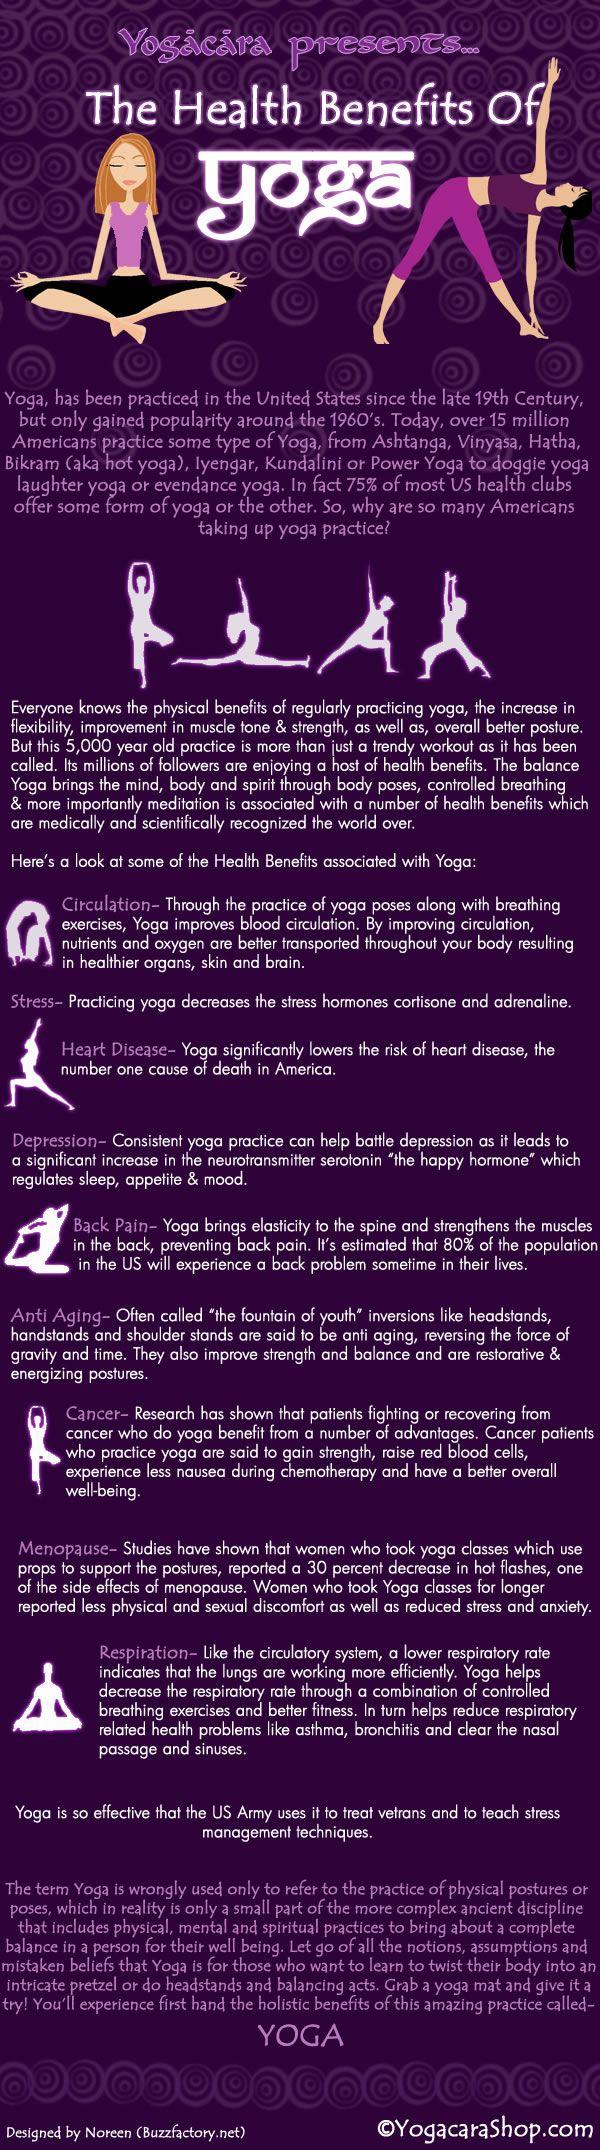 Wedding - Health Benefits Of Yoga (Infographic)